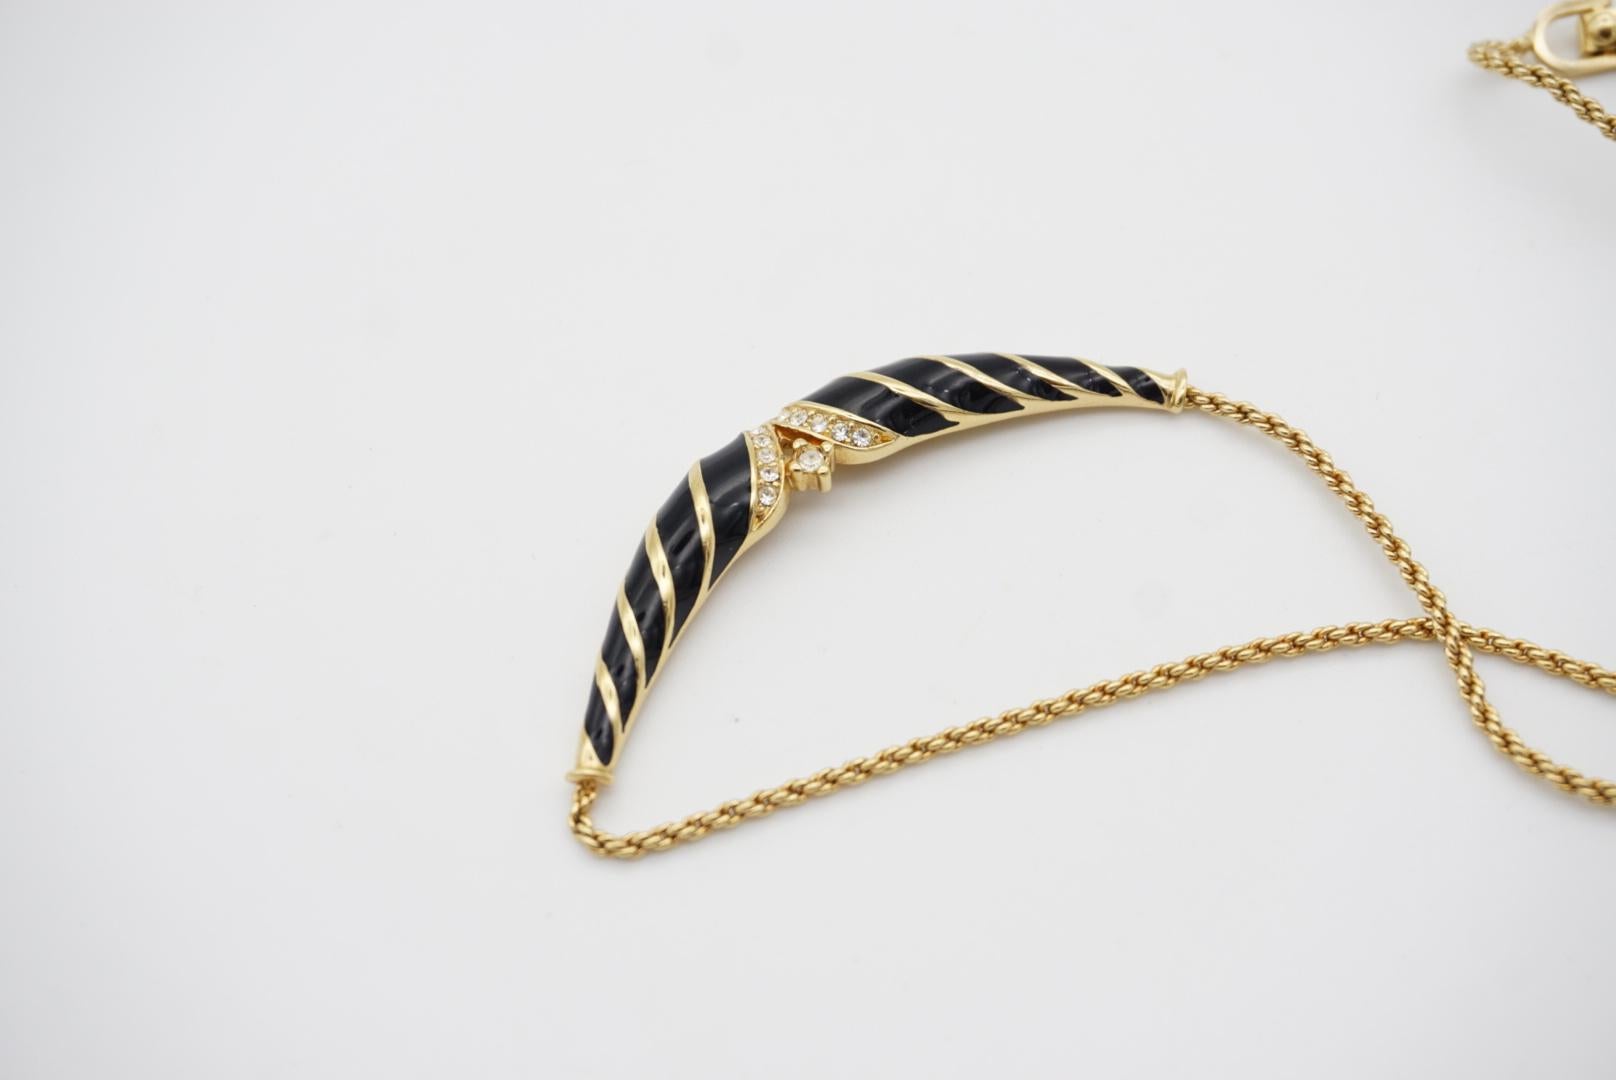 Christian Dior Vintage 1970s Black Enamel Twist Long Bar Crystals Gold Necklace For Sale 3